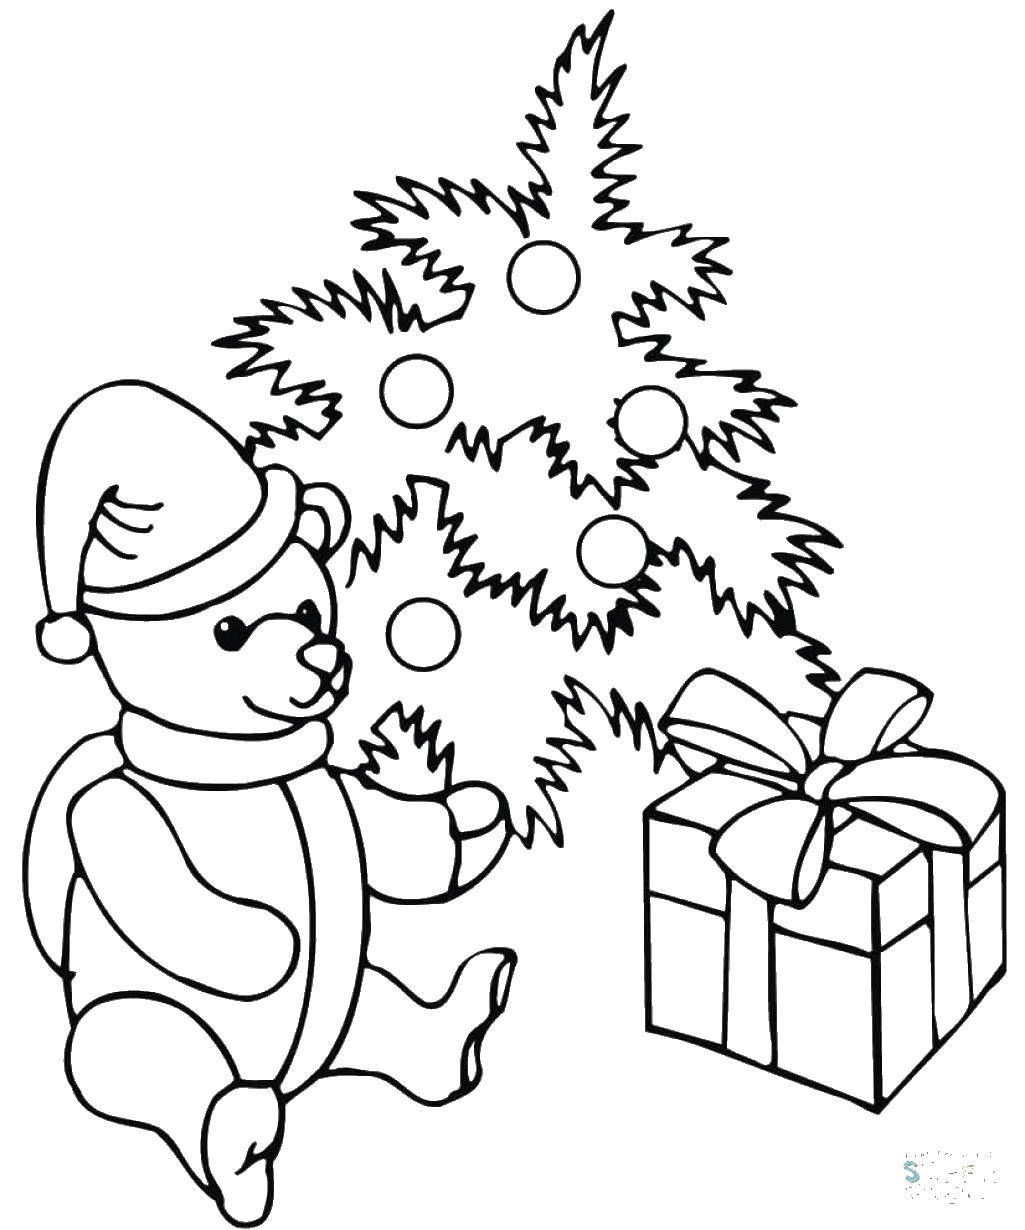 Раскраски новый год - елки, подарки, мишки для детей разных возрастов (подарки, мишка)